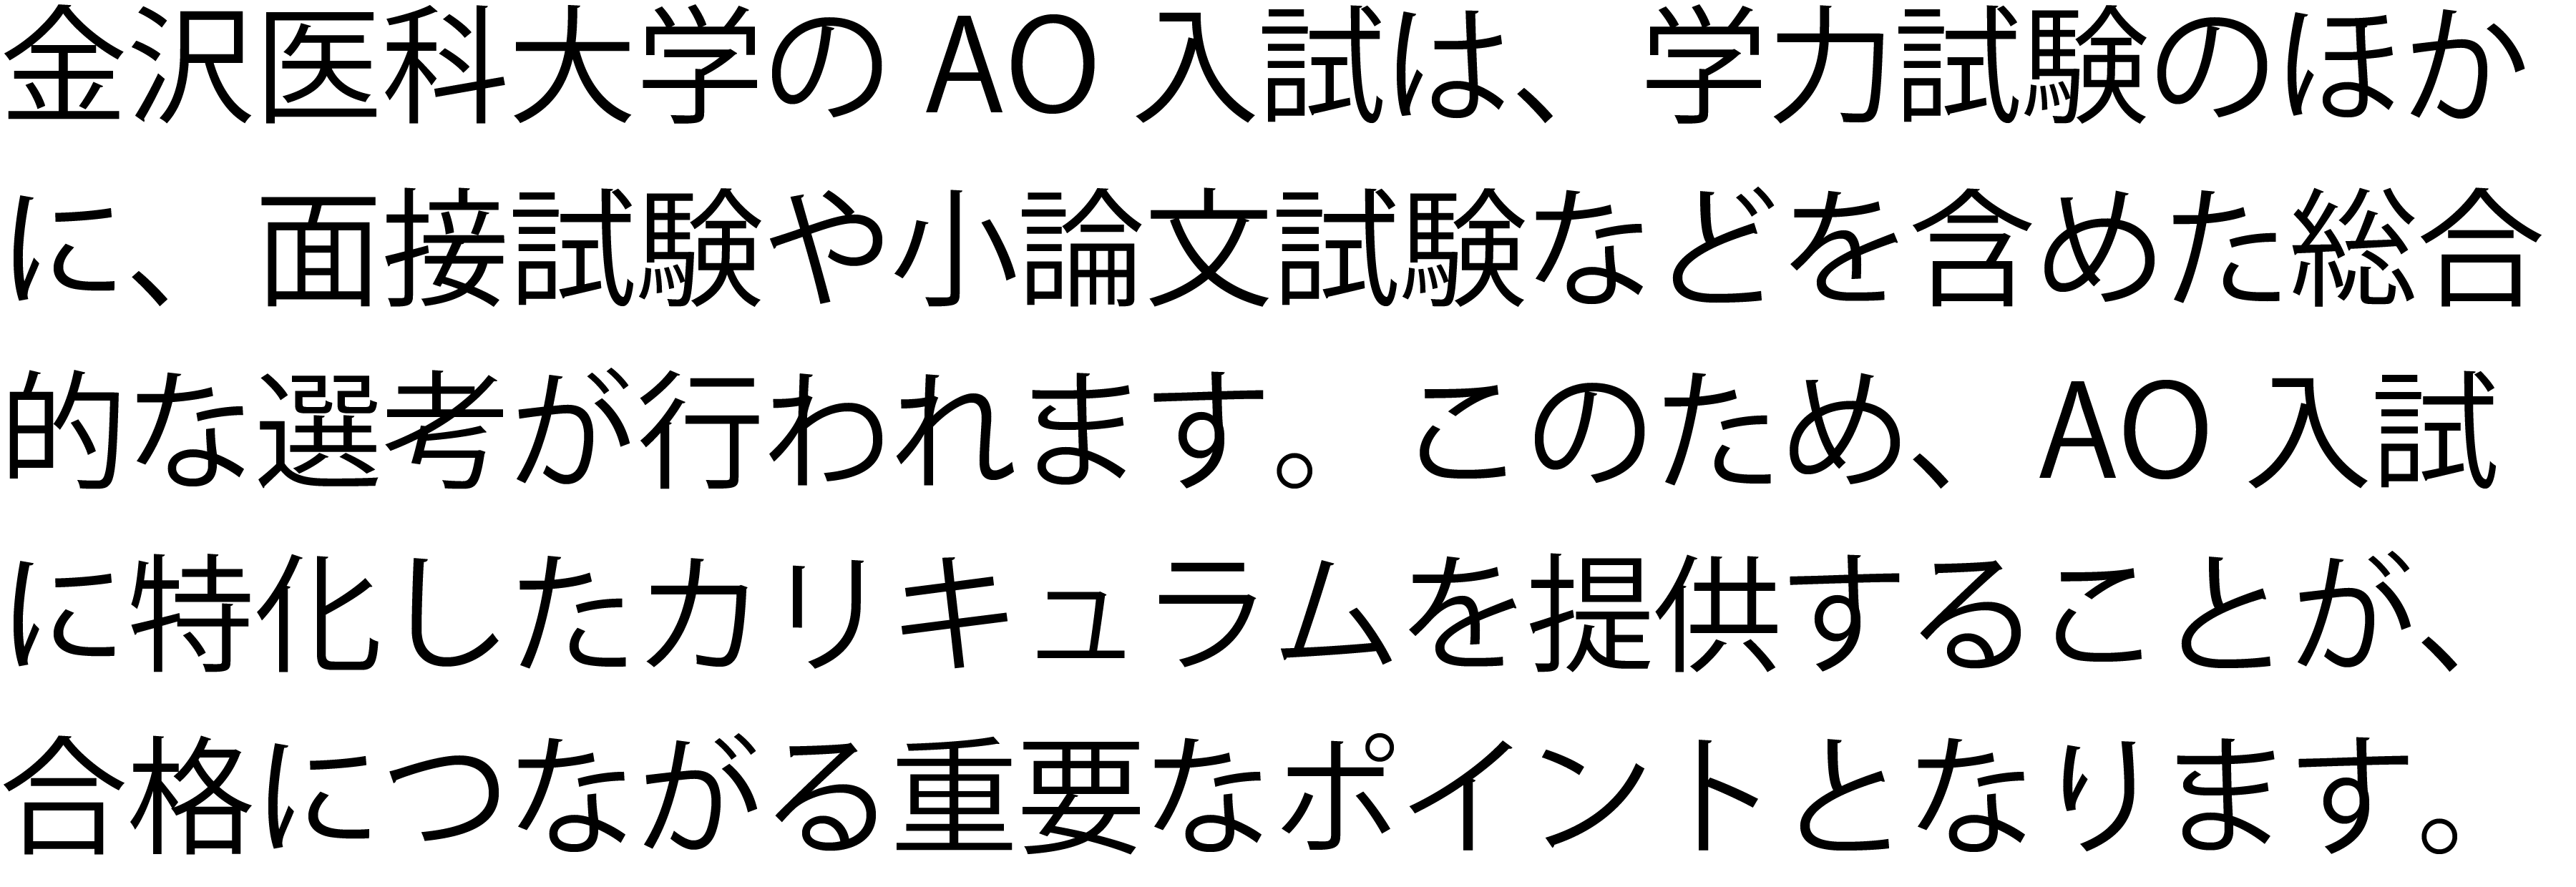 金沢医科大学AO入試・専用コースNEW・ポイント